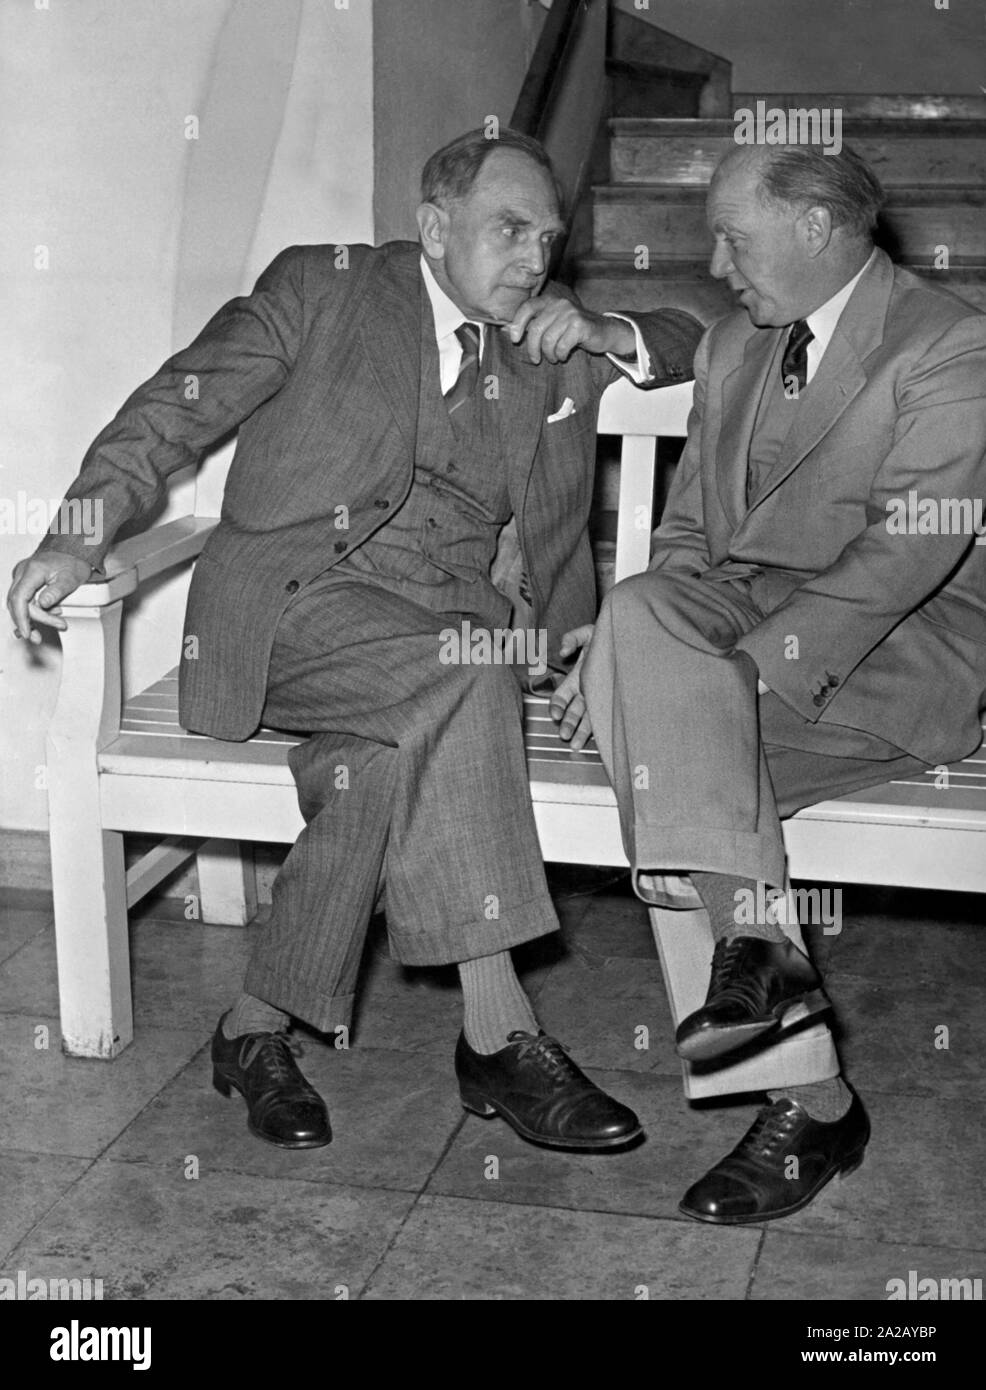 Les deux prix Nobel allemand, Otto Hahn (Prix Nobel de chimie en 1944, à gauche) et Werner Heisenberg (Prix Nobel de physique en 1932, à droite) avoir une conversation. Banque D'Images